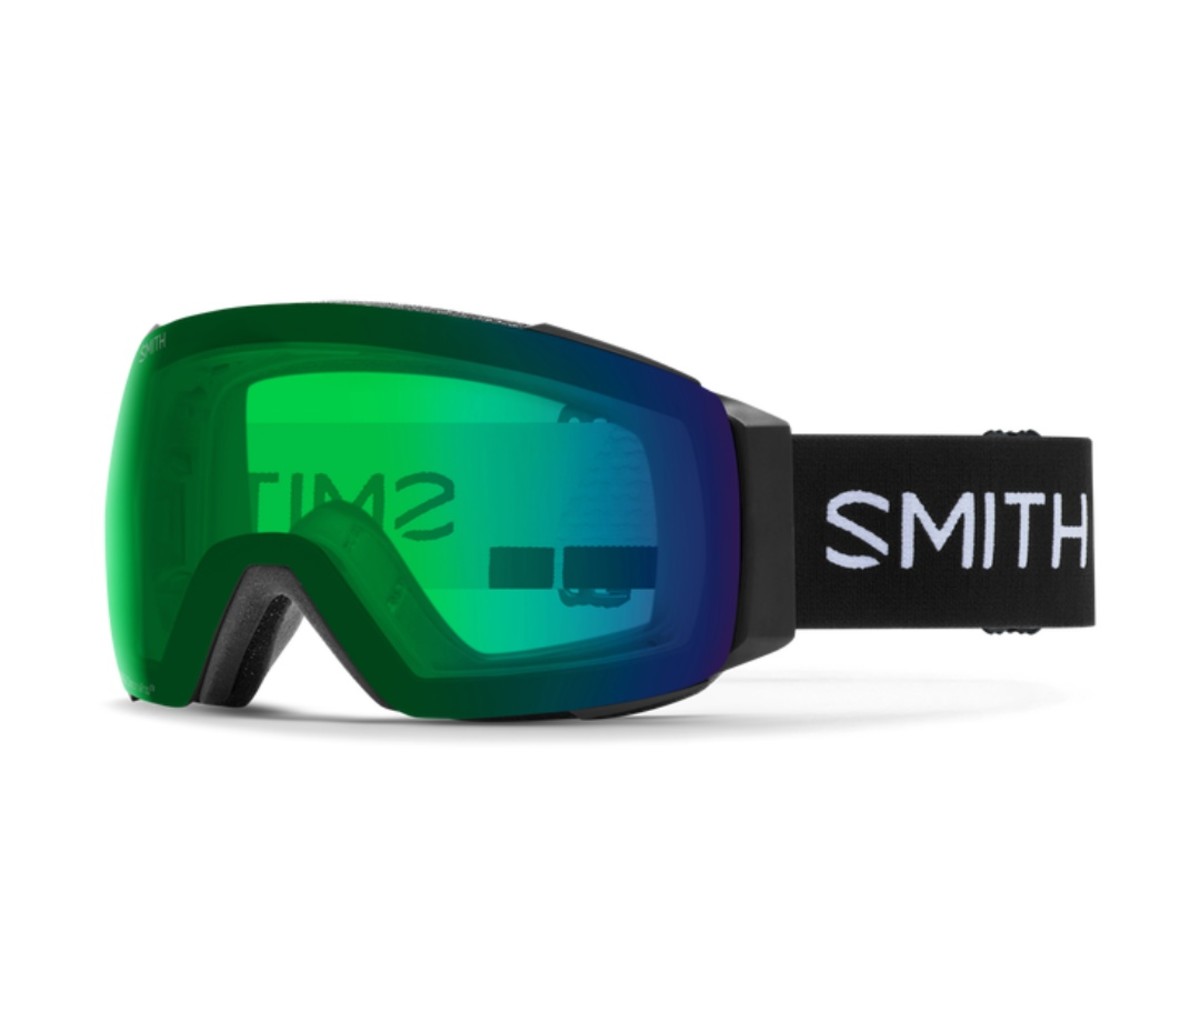 Smith I/O MAG Imprint 3D customizable gear